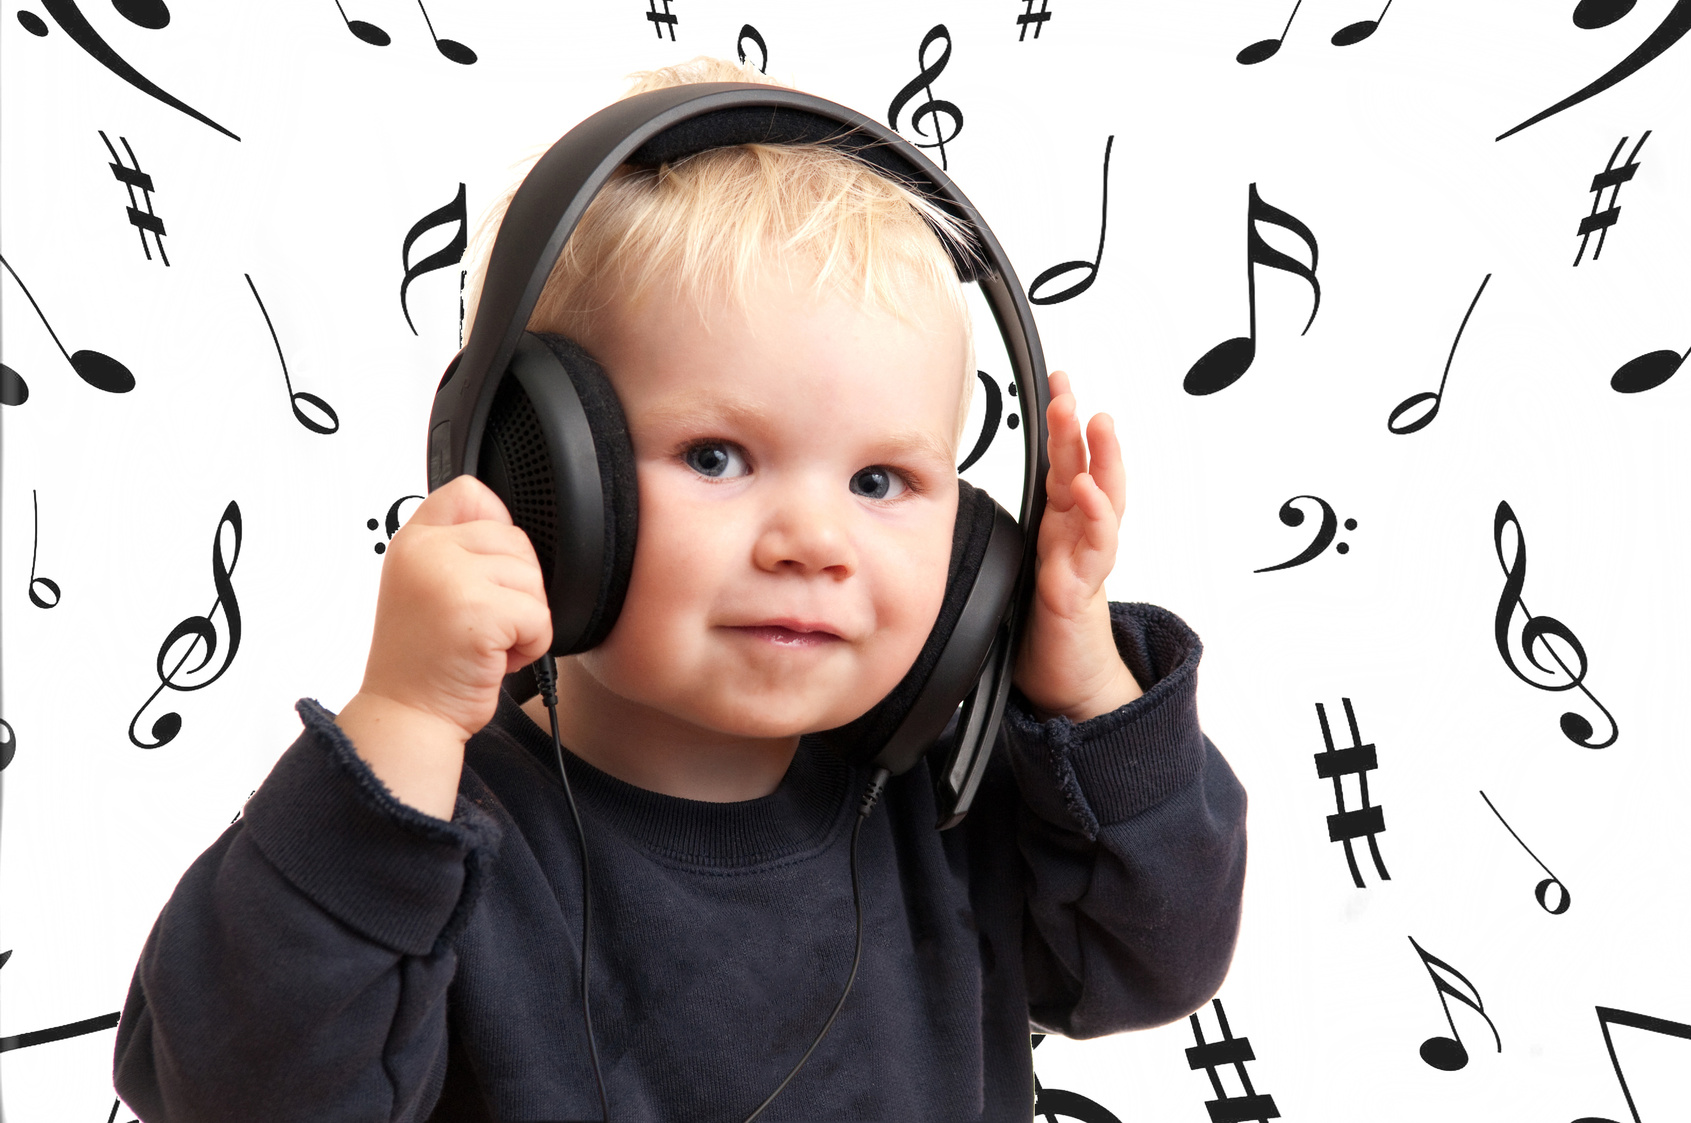 Песня слушание музыки. Ребенок в наушниках. Ребенок с наушниками. Слушание музыки. Музыкальное восприятие детей.